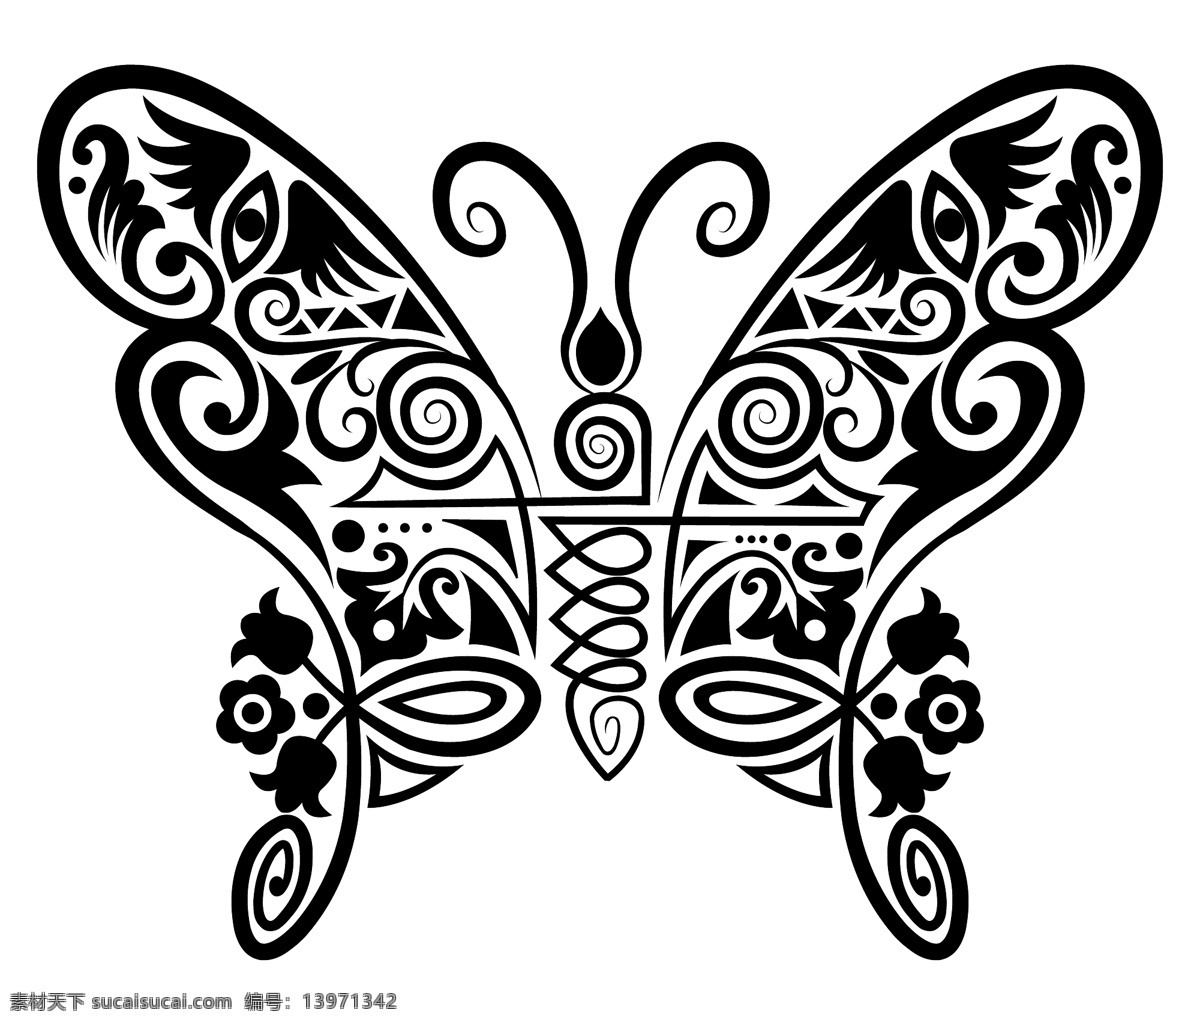 动物 图案 线条 艺术 向量 蝴蝶 轮廓 手绘 图形 纹身 线 艺术线条 形态 矢量 矢量图 矢量人物